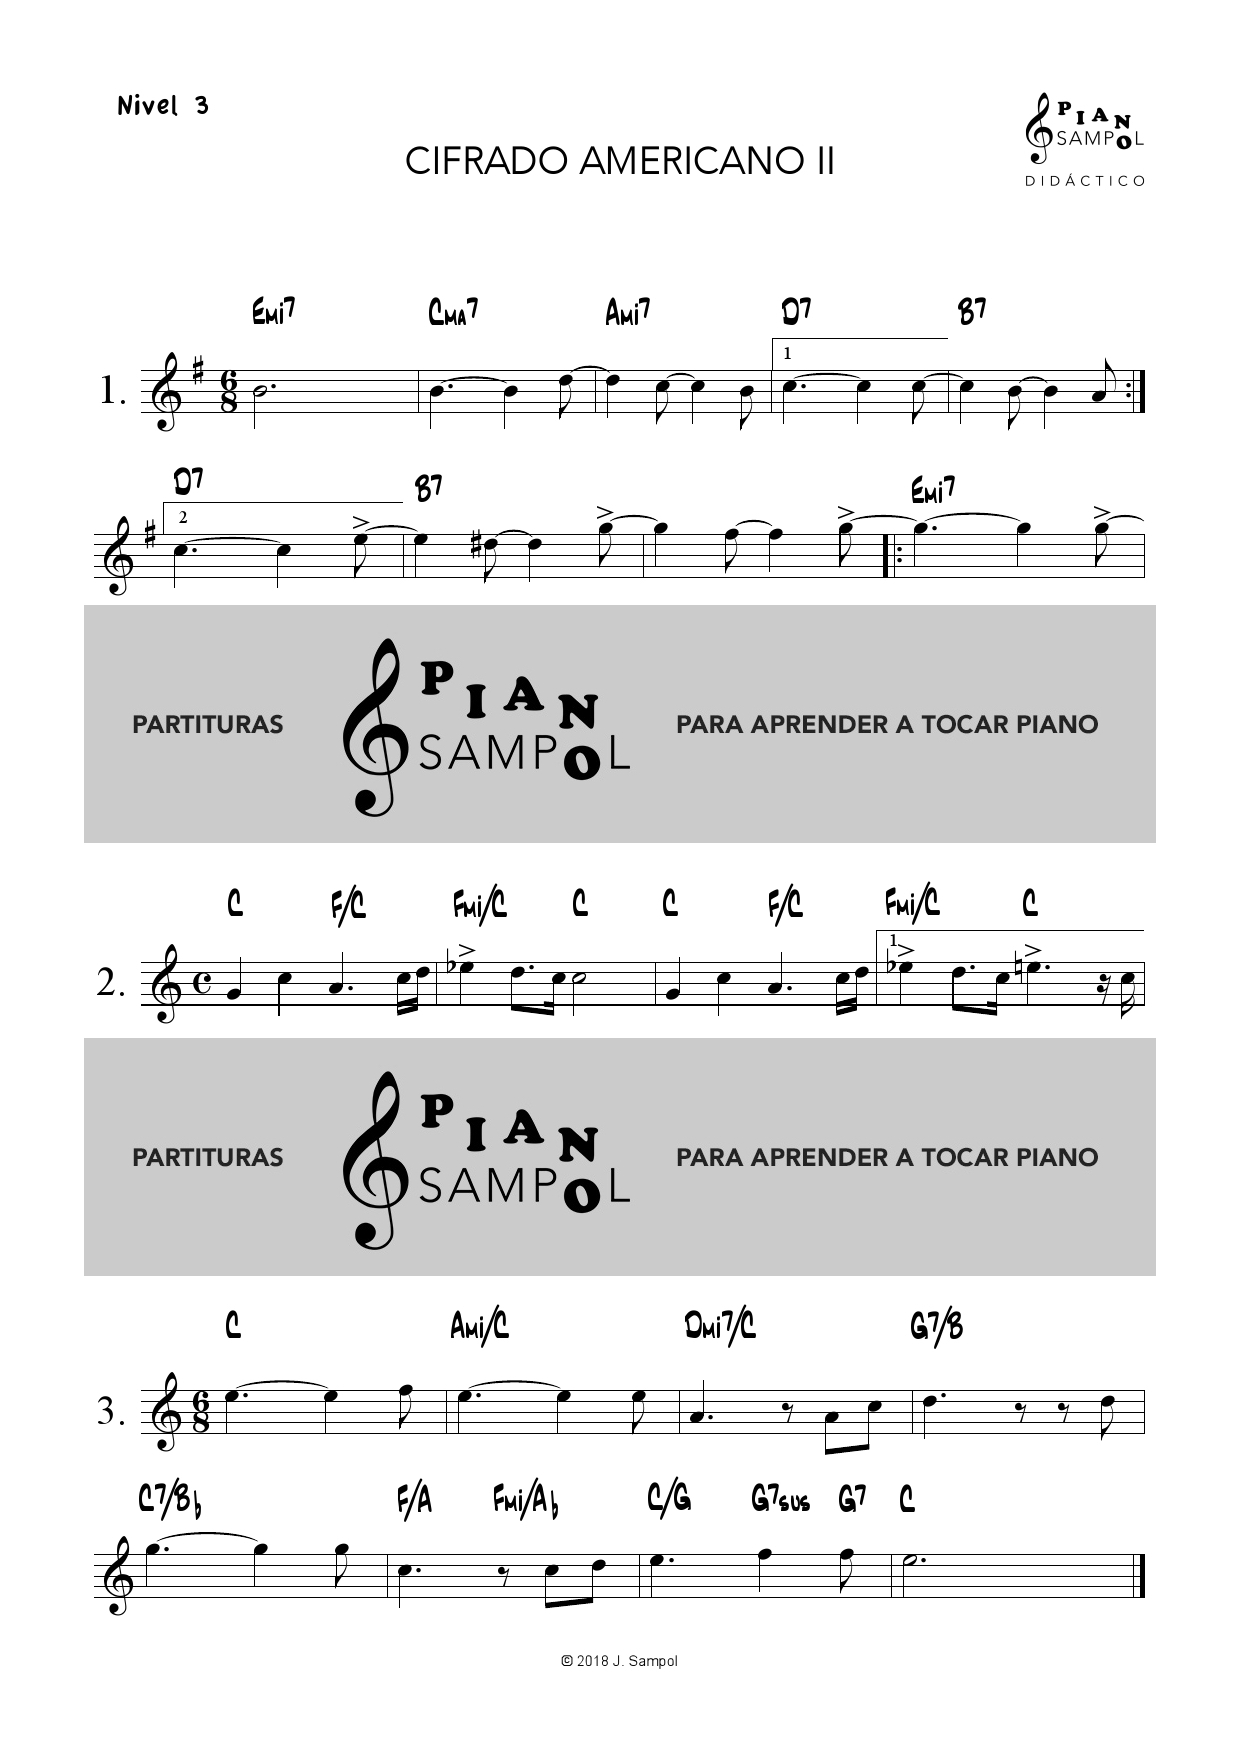 Won obturador marca CIFRADO AMERICANO II – Descargar partitura PDF piano – Material de Música